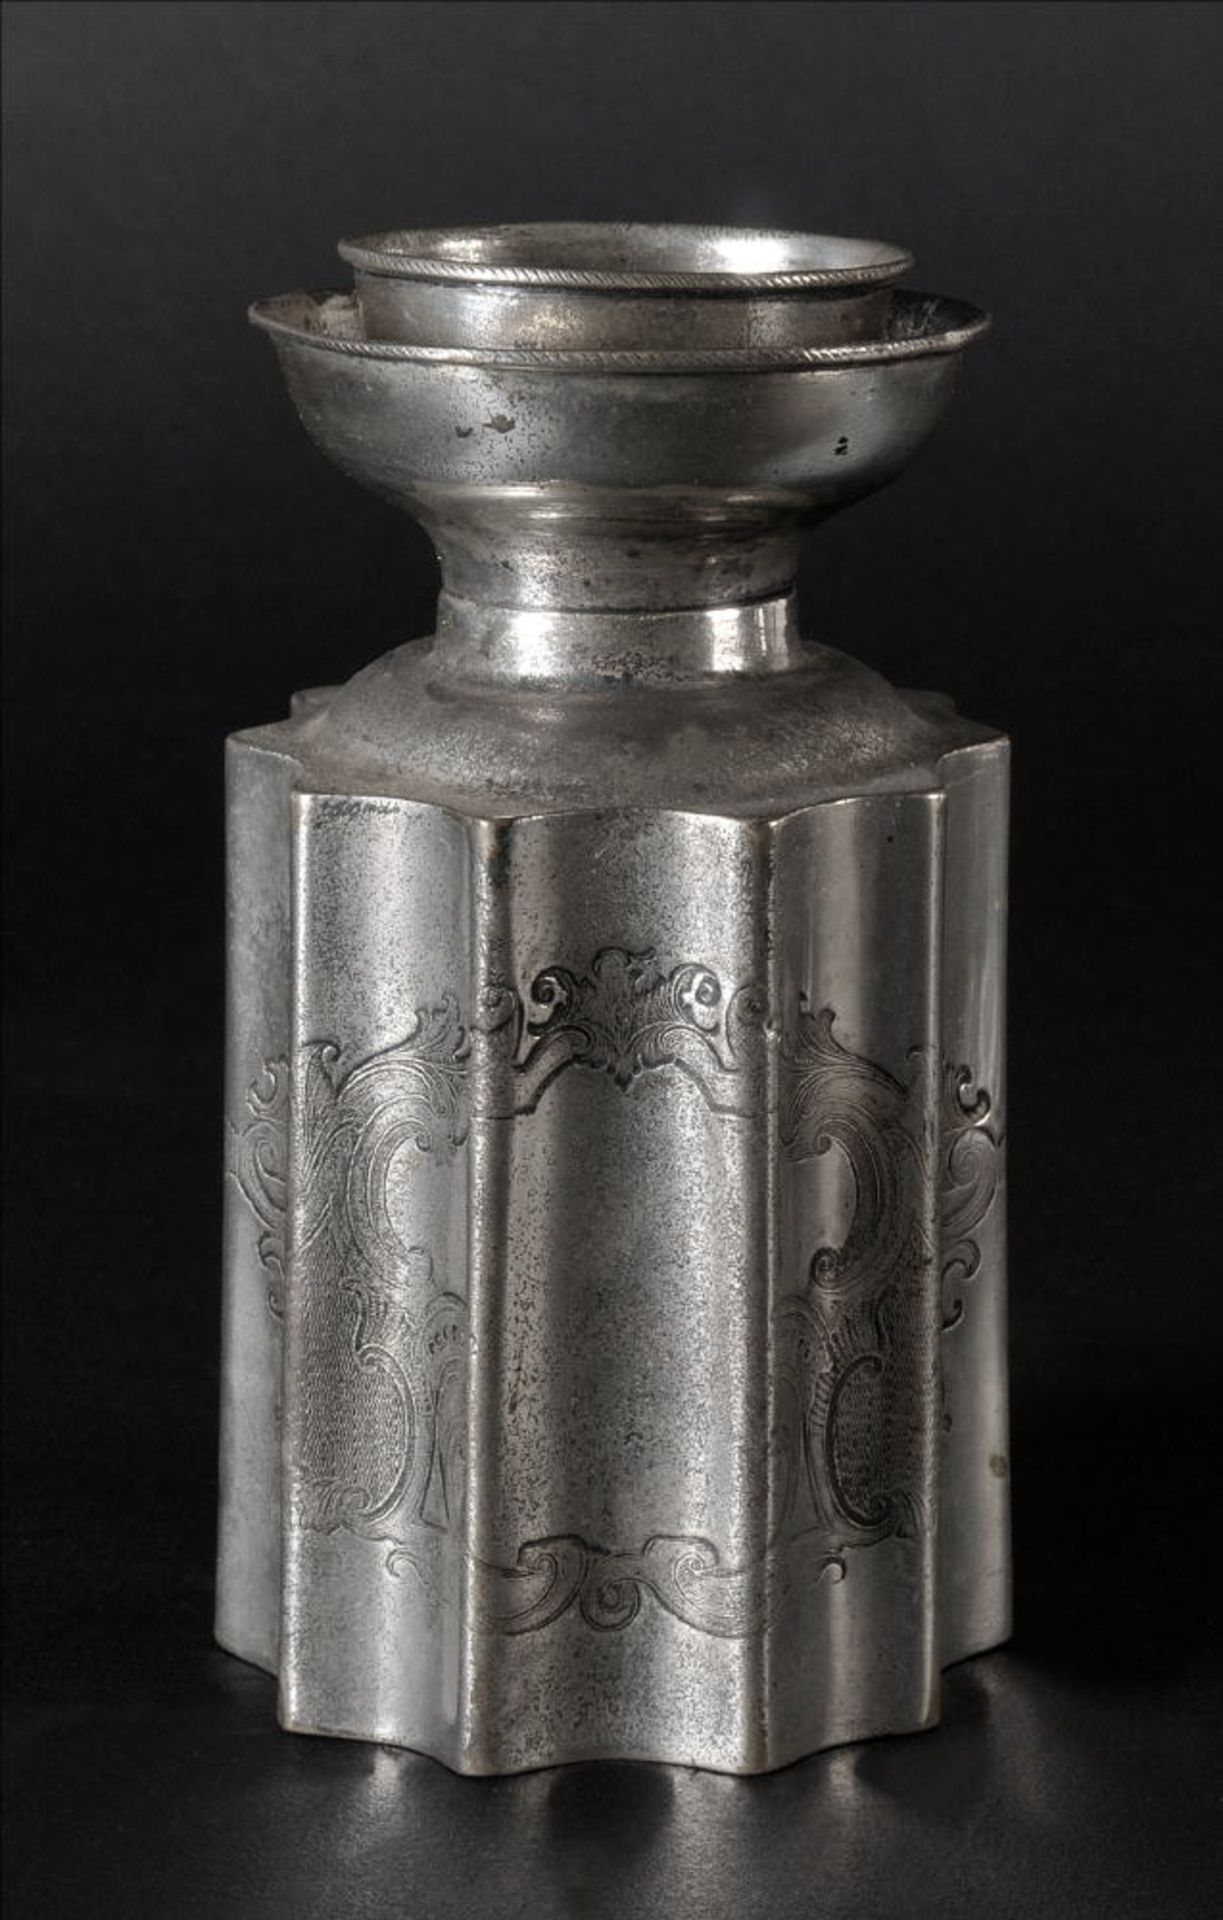 Teedose13 Lot Silber, 99 g, graviertes Ornamentdekor, kannelierte Wandung, H= 12,5 cm, Beschau: